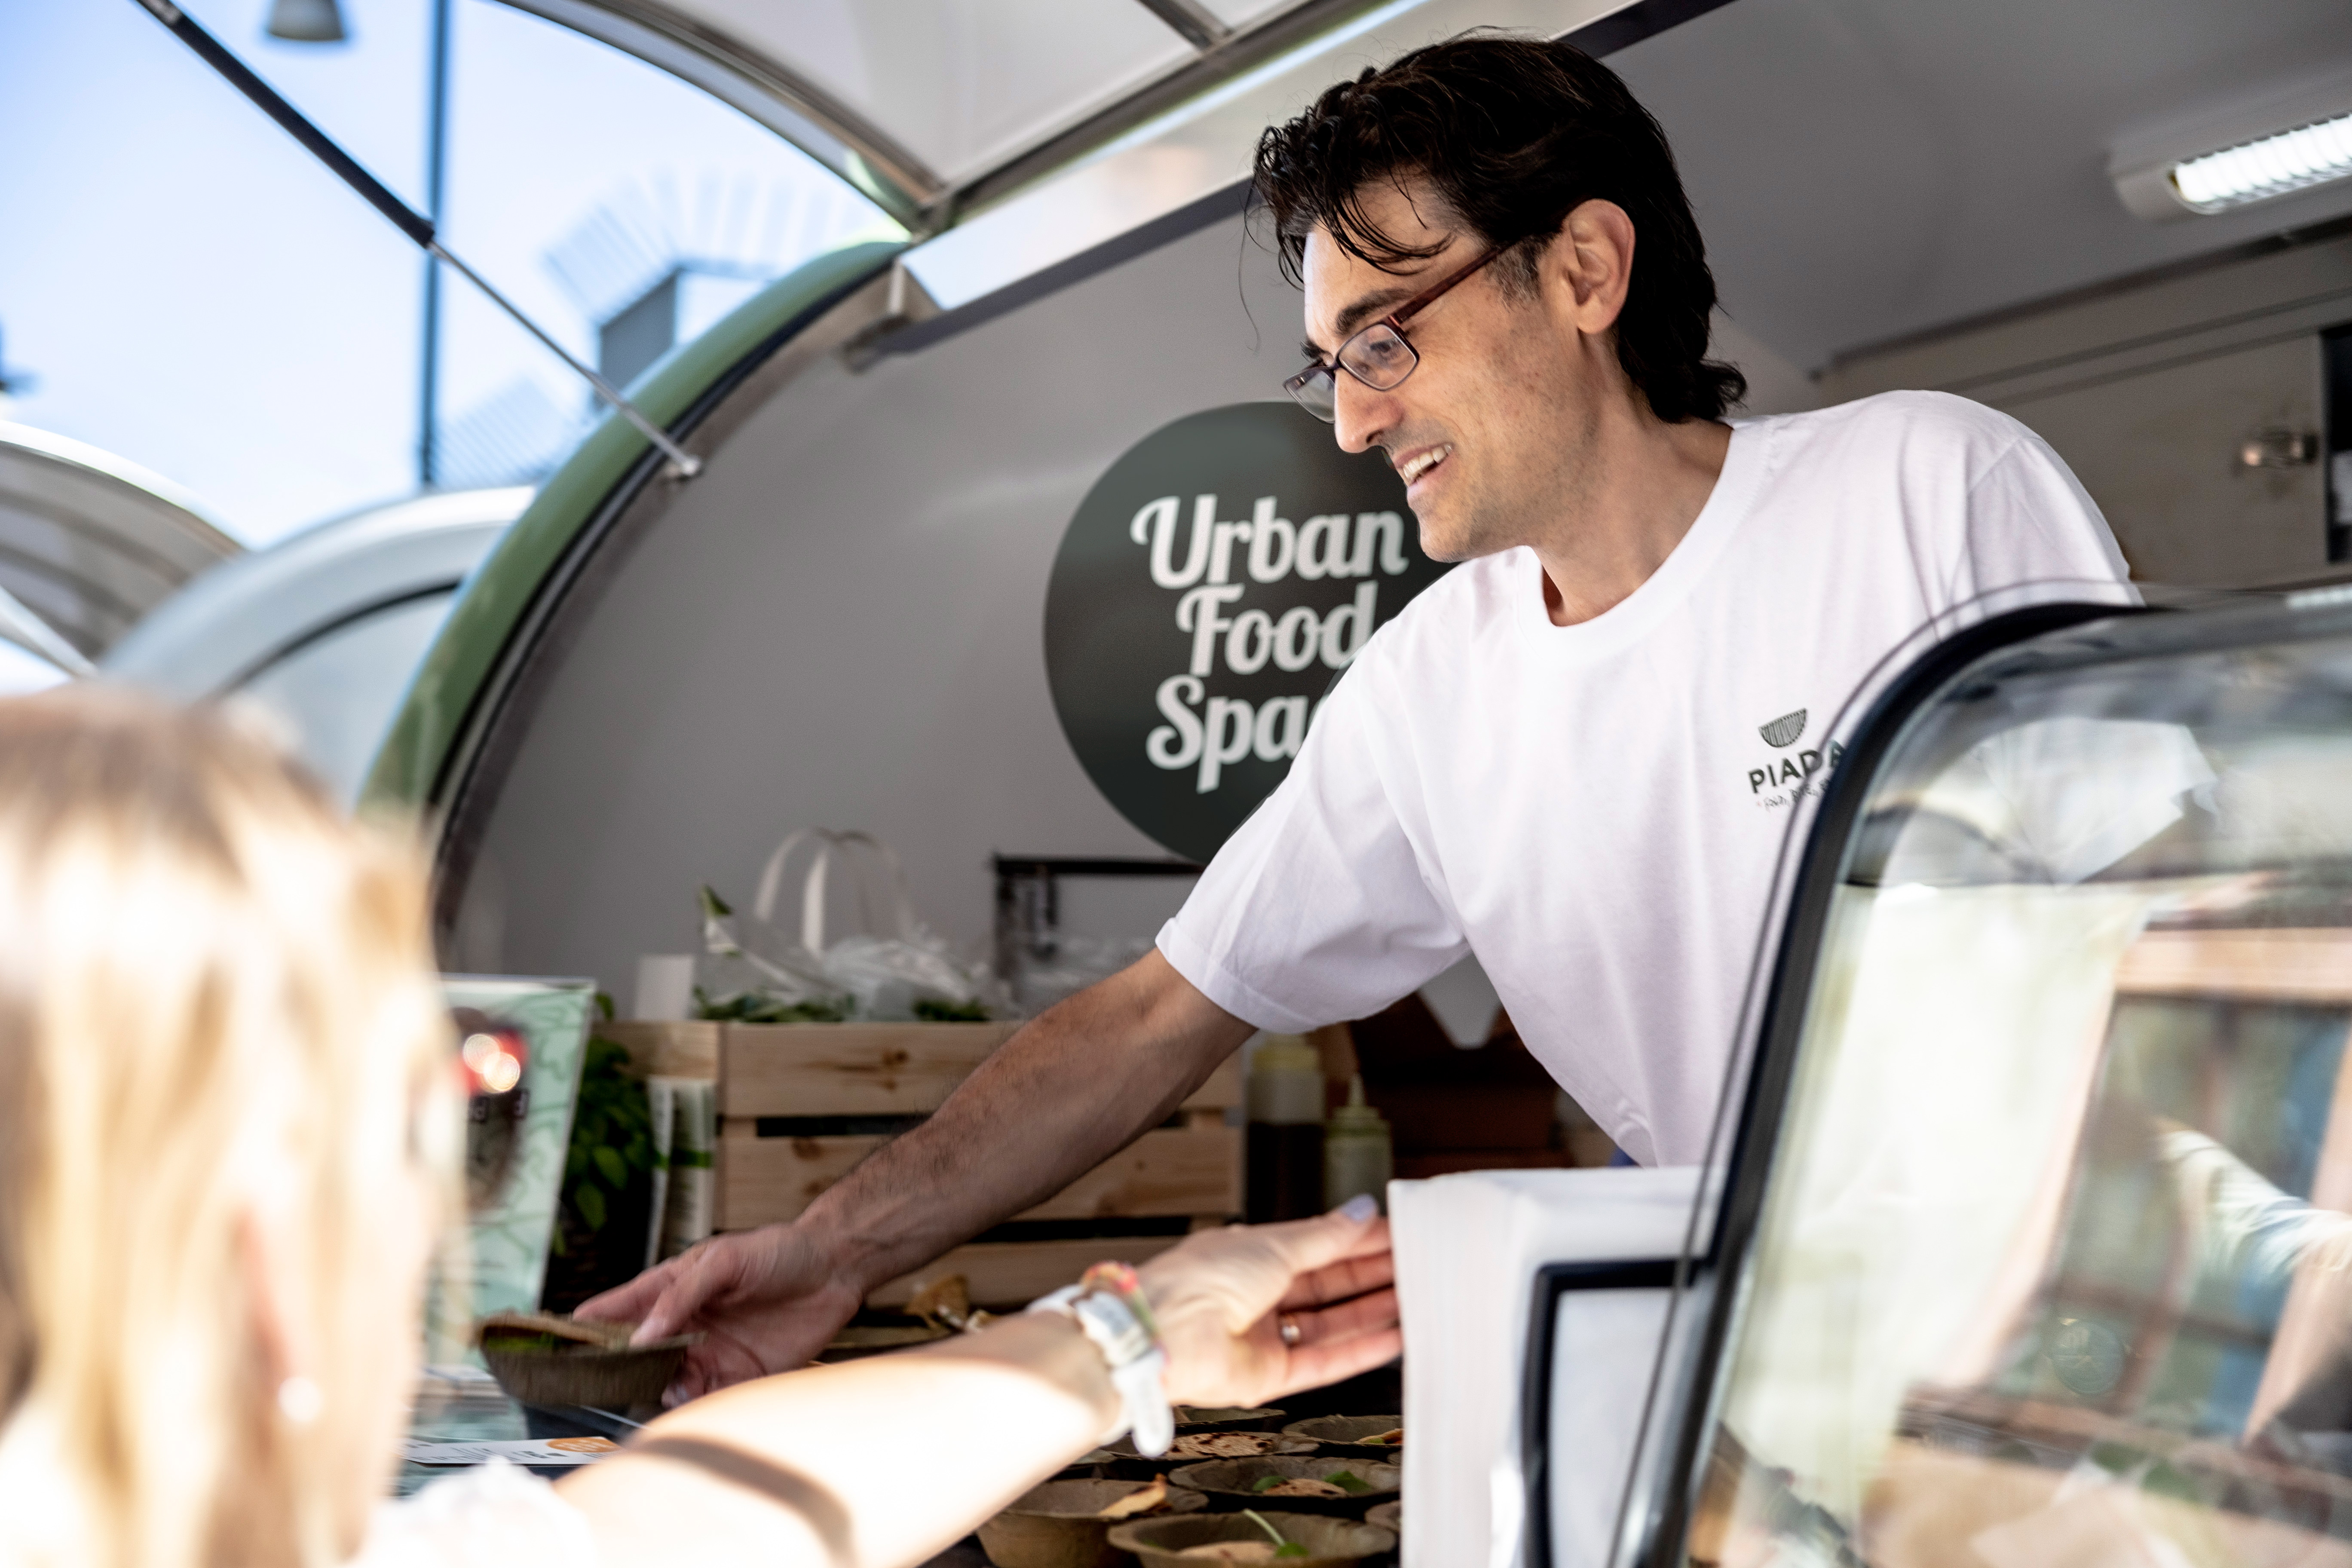 En manligt kodad person i vit t-shirt står i en food truck och serverar gäster.  Innuti food trucken syns Urban Food Space logotyp.